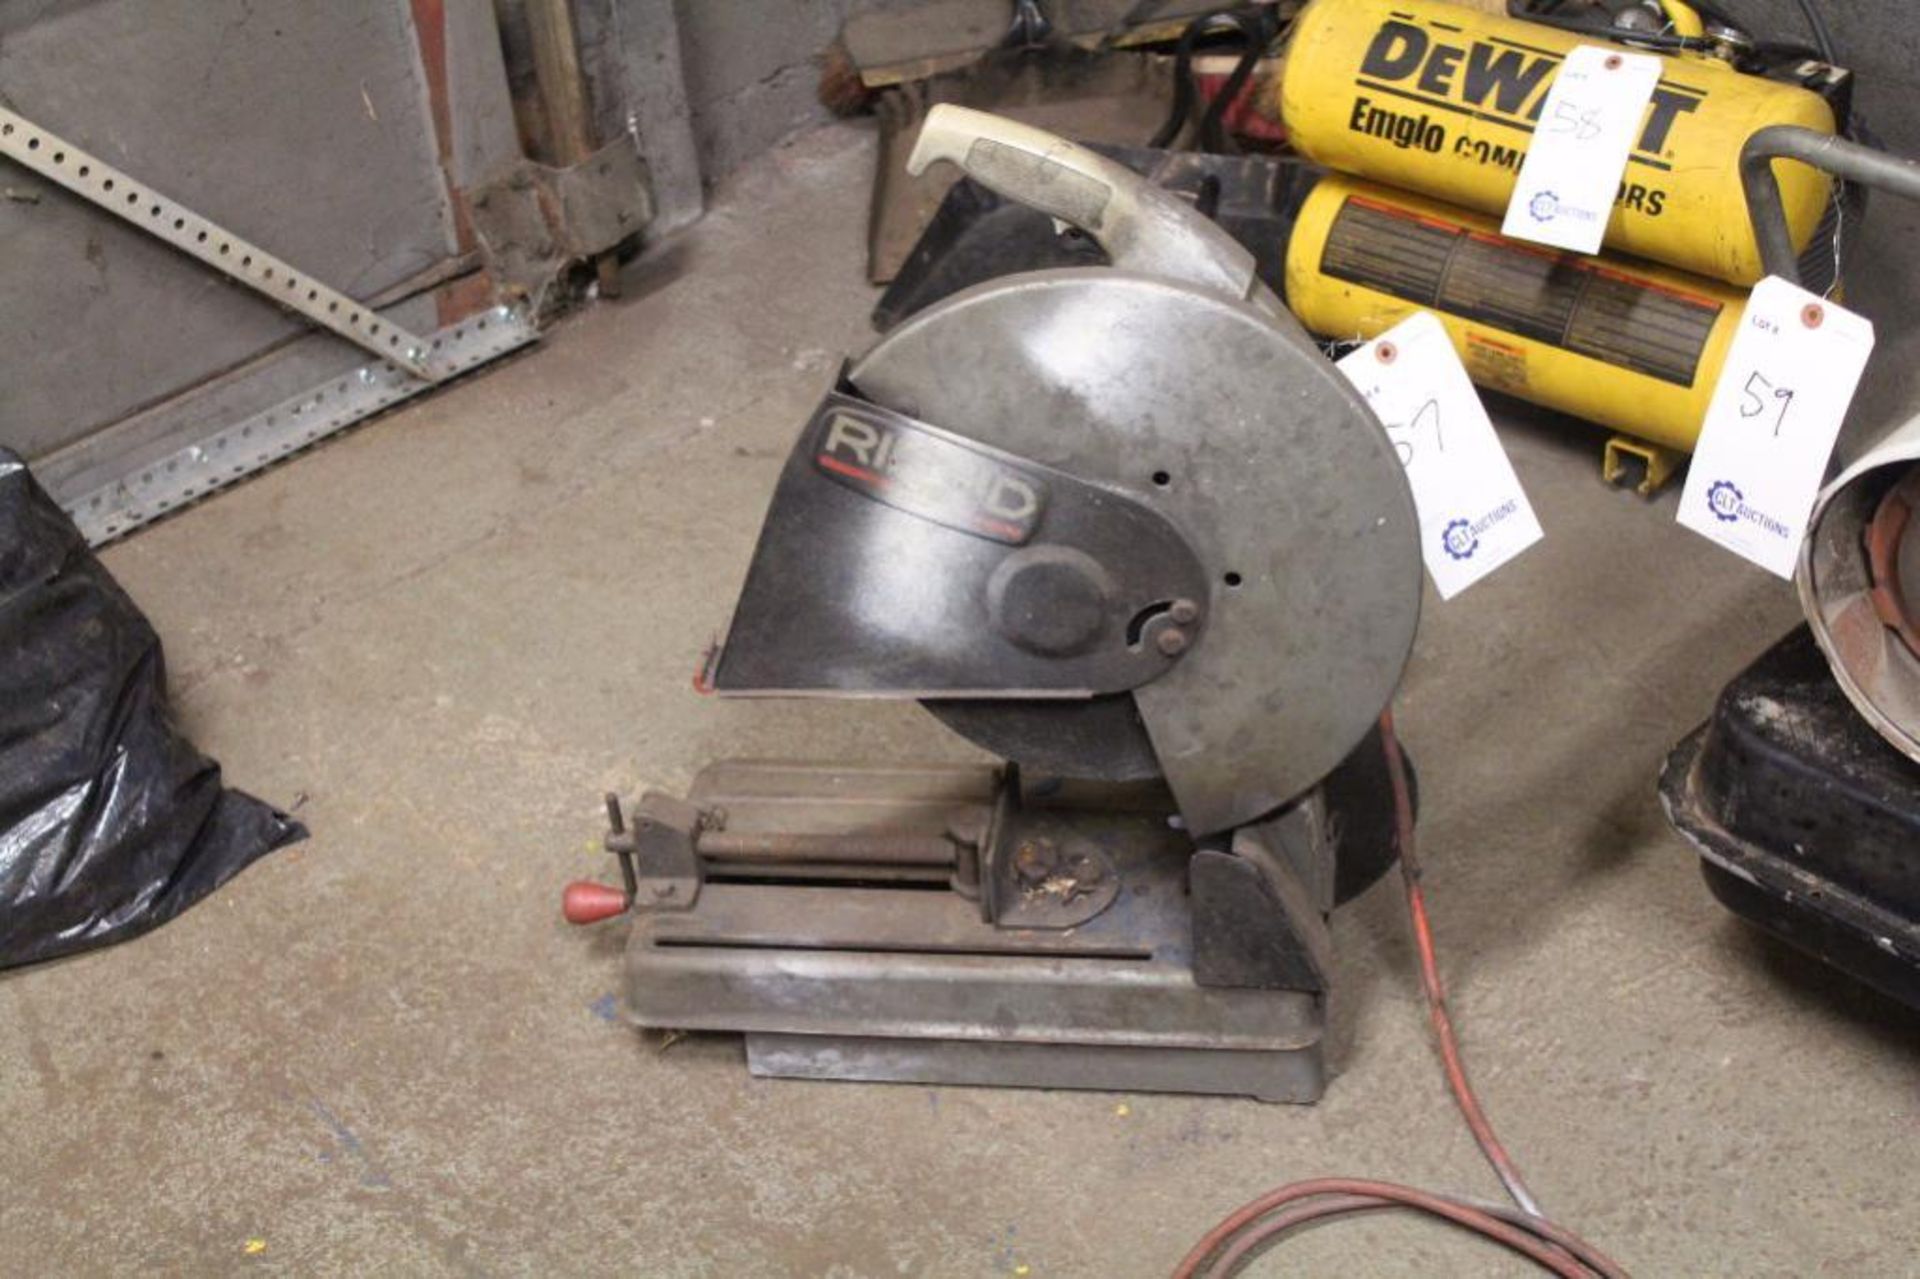 Rigid CM14000 14" abrasive cut off saw